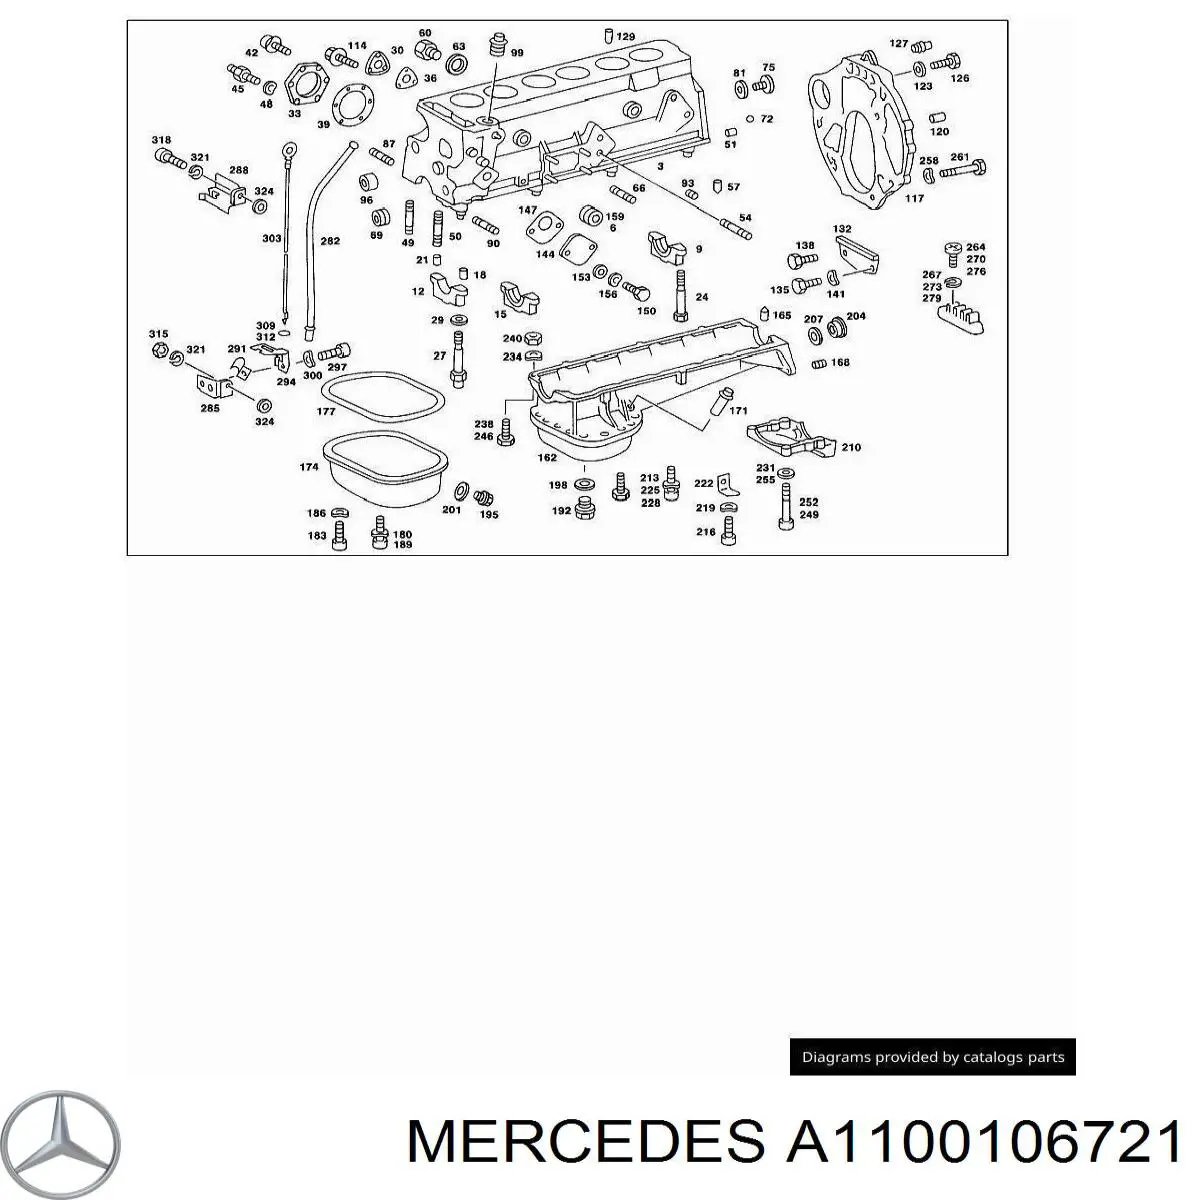 A1100106721 Mercedes комплект прокладок двигателя верхний